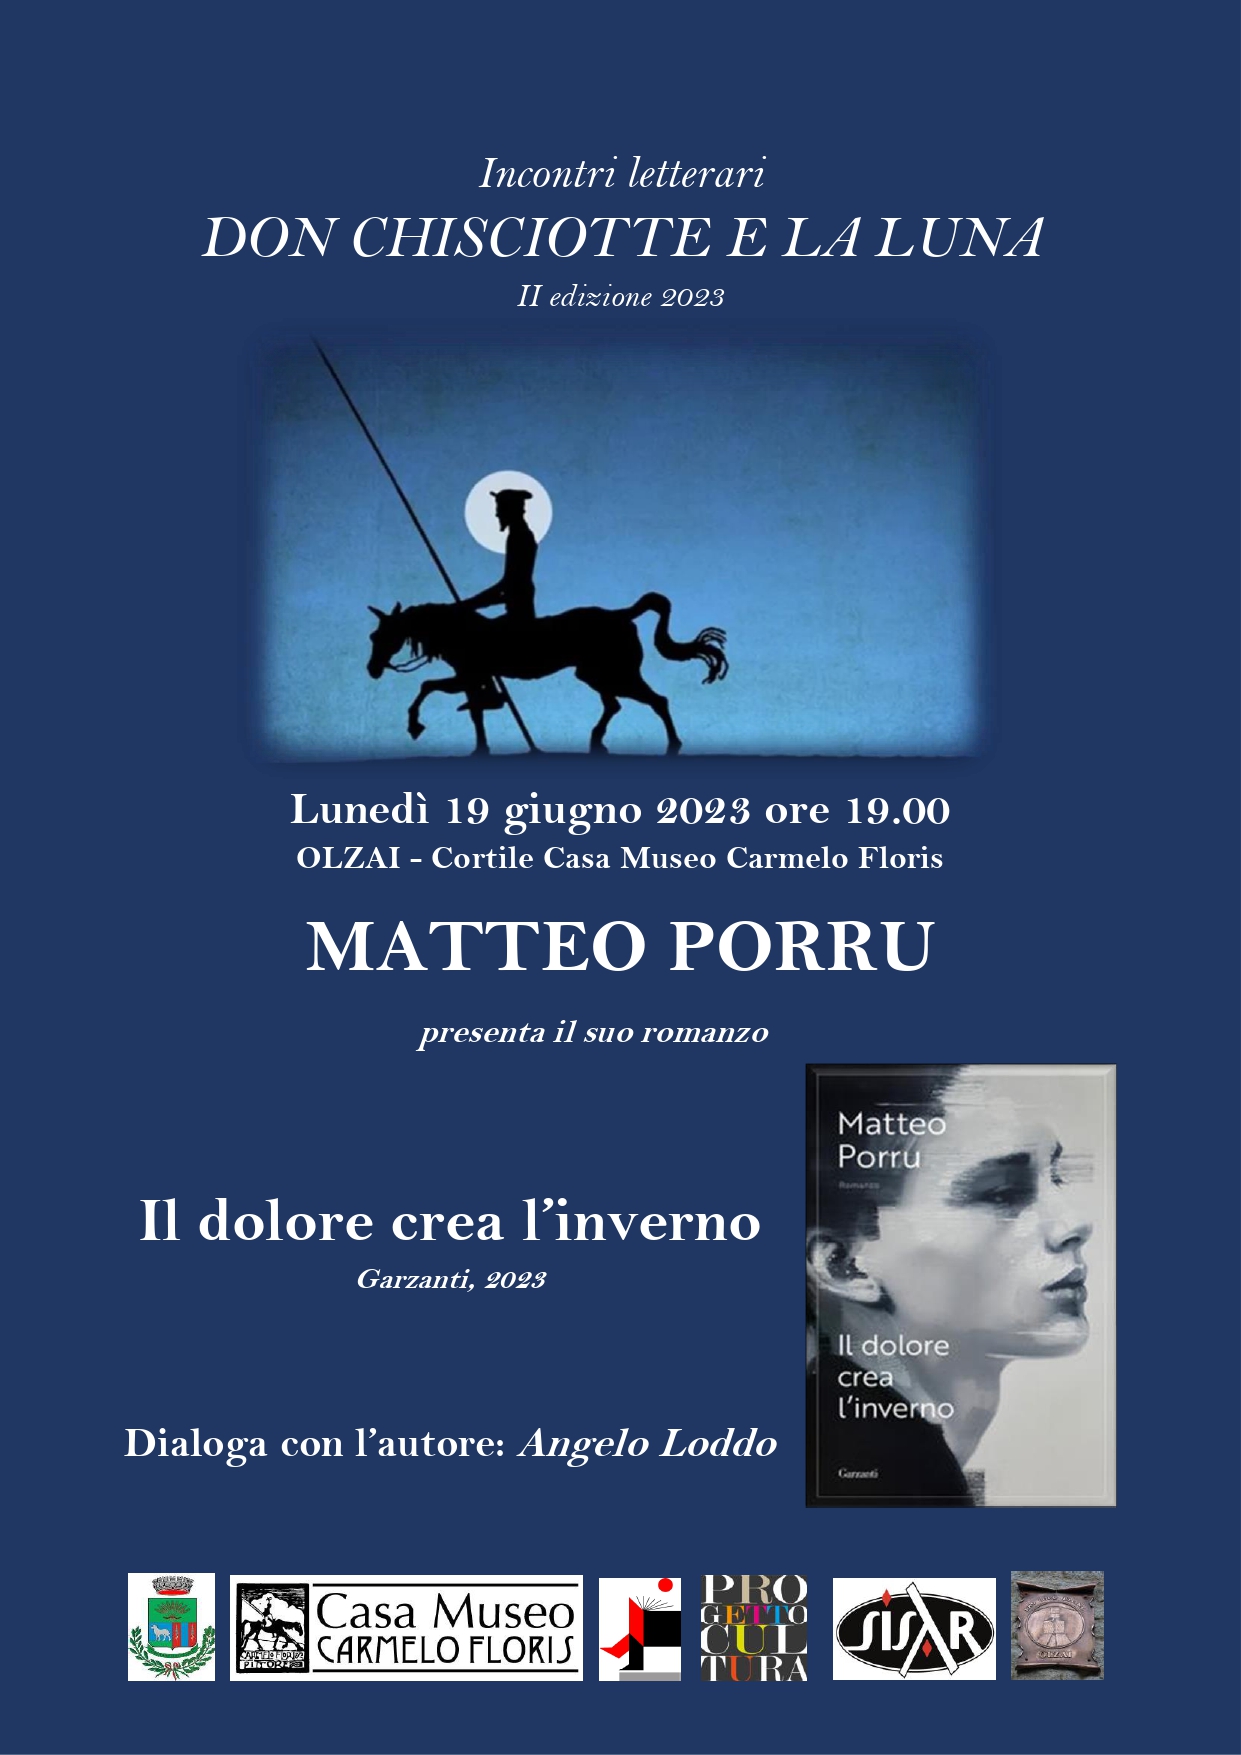 Don Chisciotte e la Luna - MATTEO PORRU presenta 'Il dolore crea l'inverno'  19/06/2023 ore 19,00